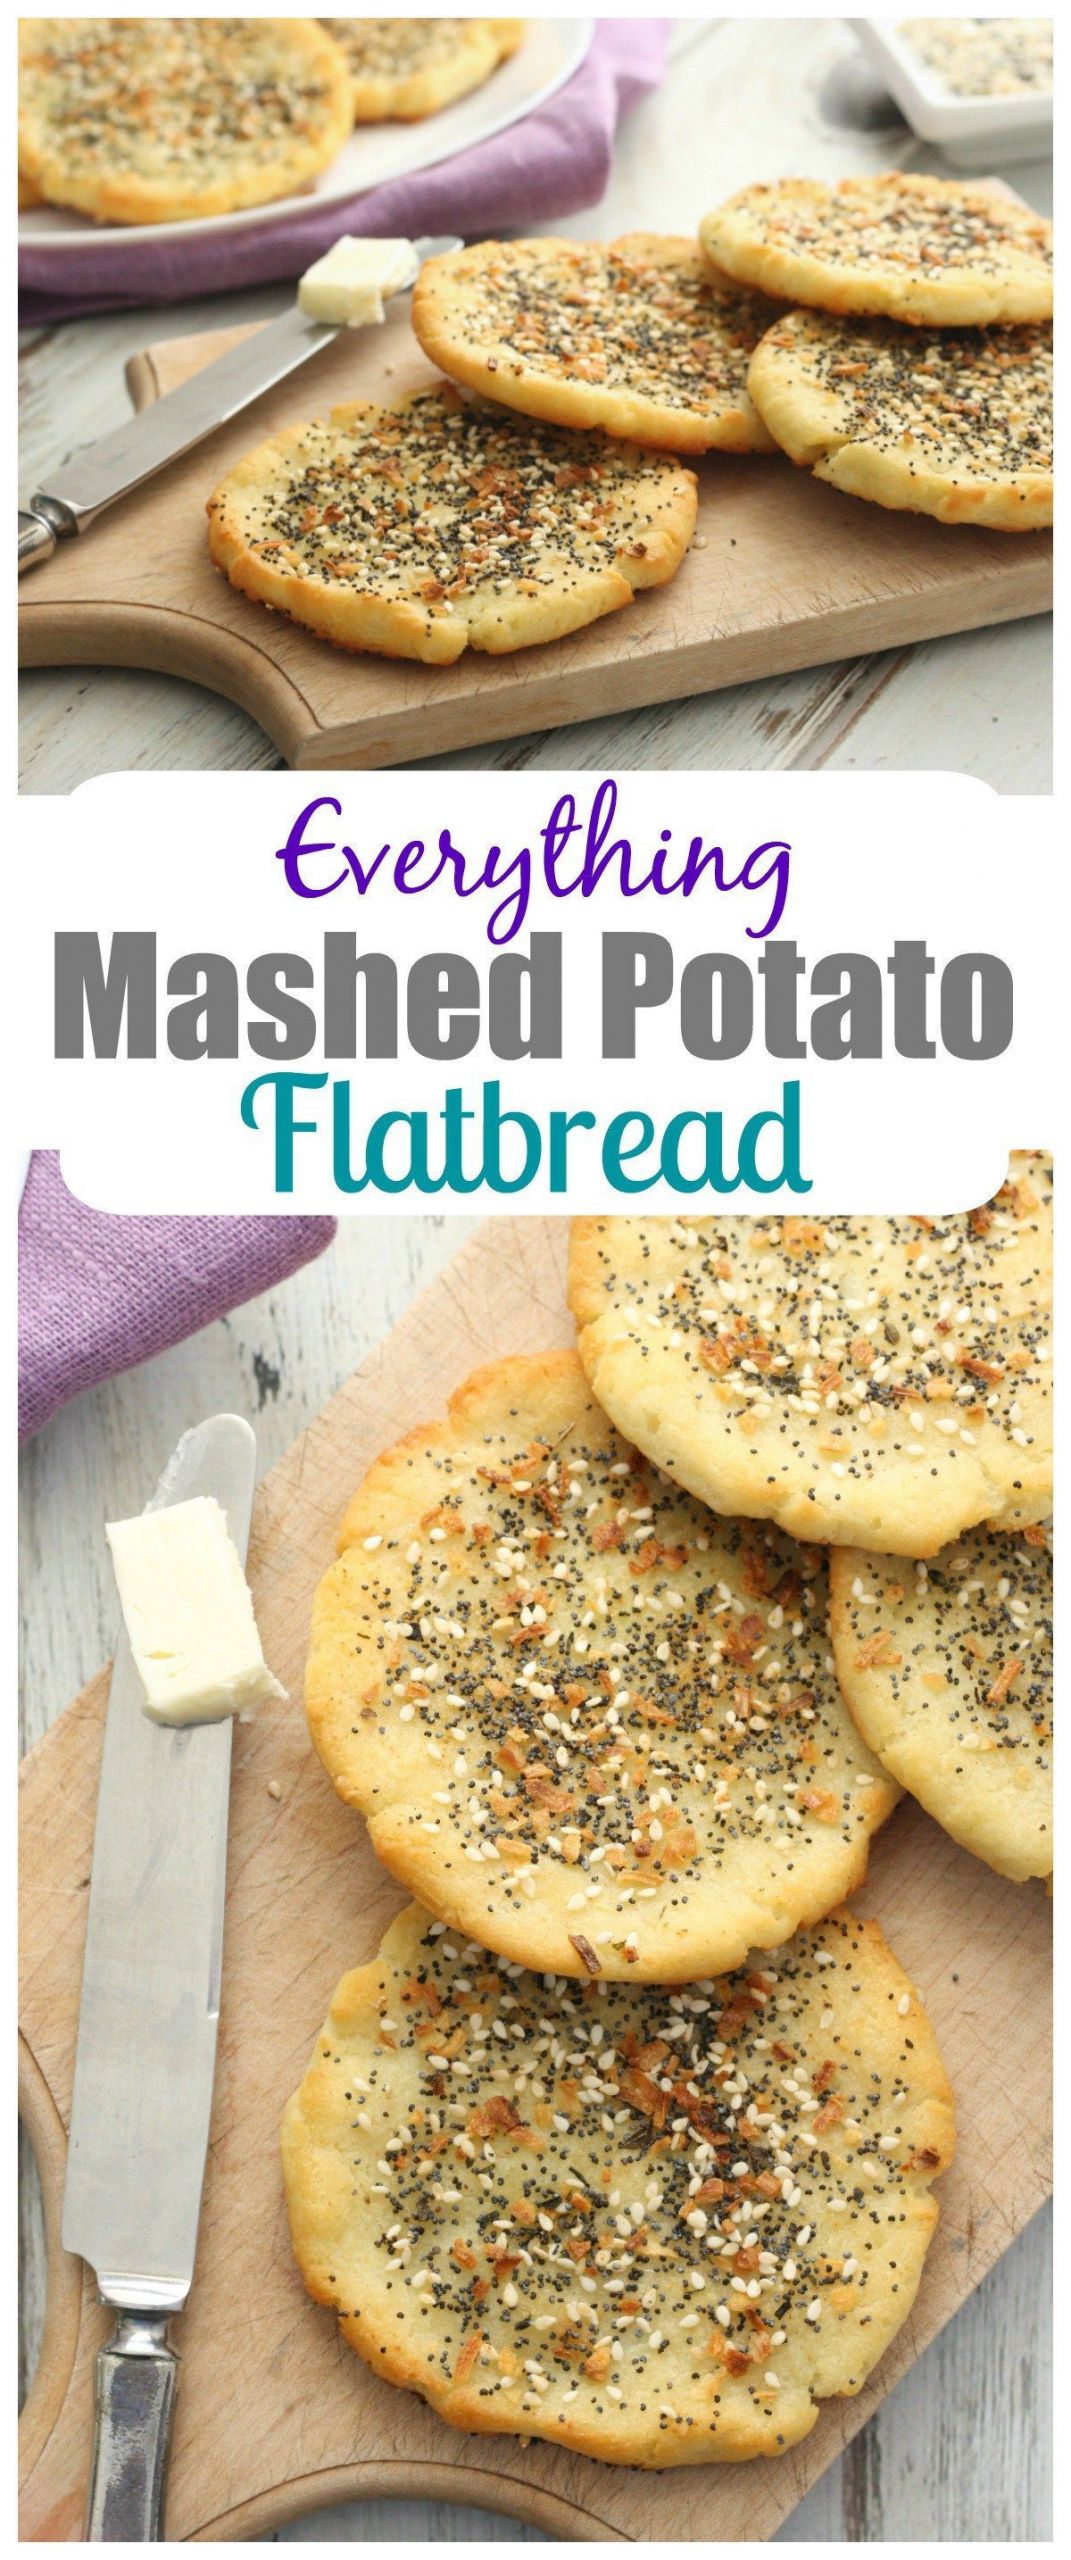 Are Mashed Potatoes Gluten Free
 Everything Mashed Potato Flatbread